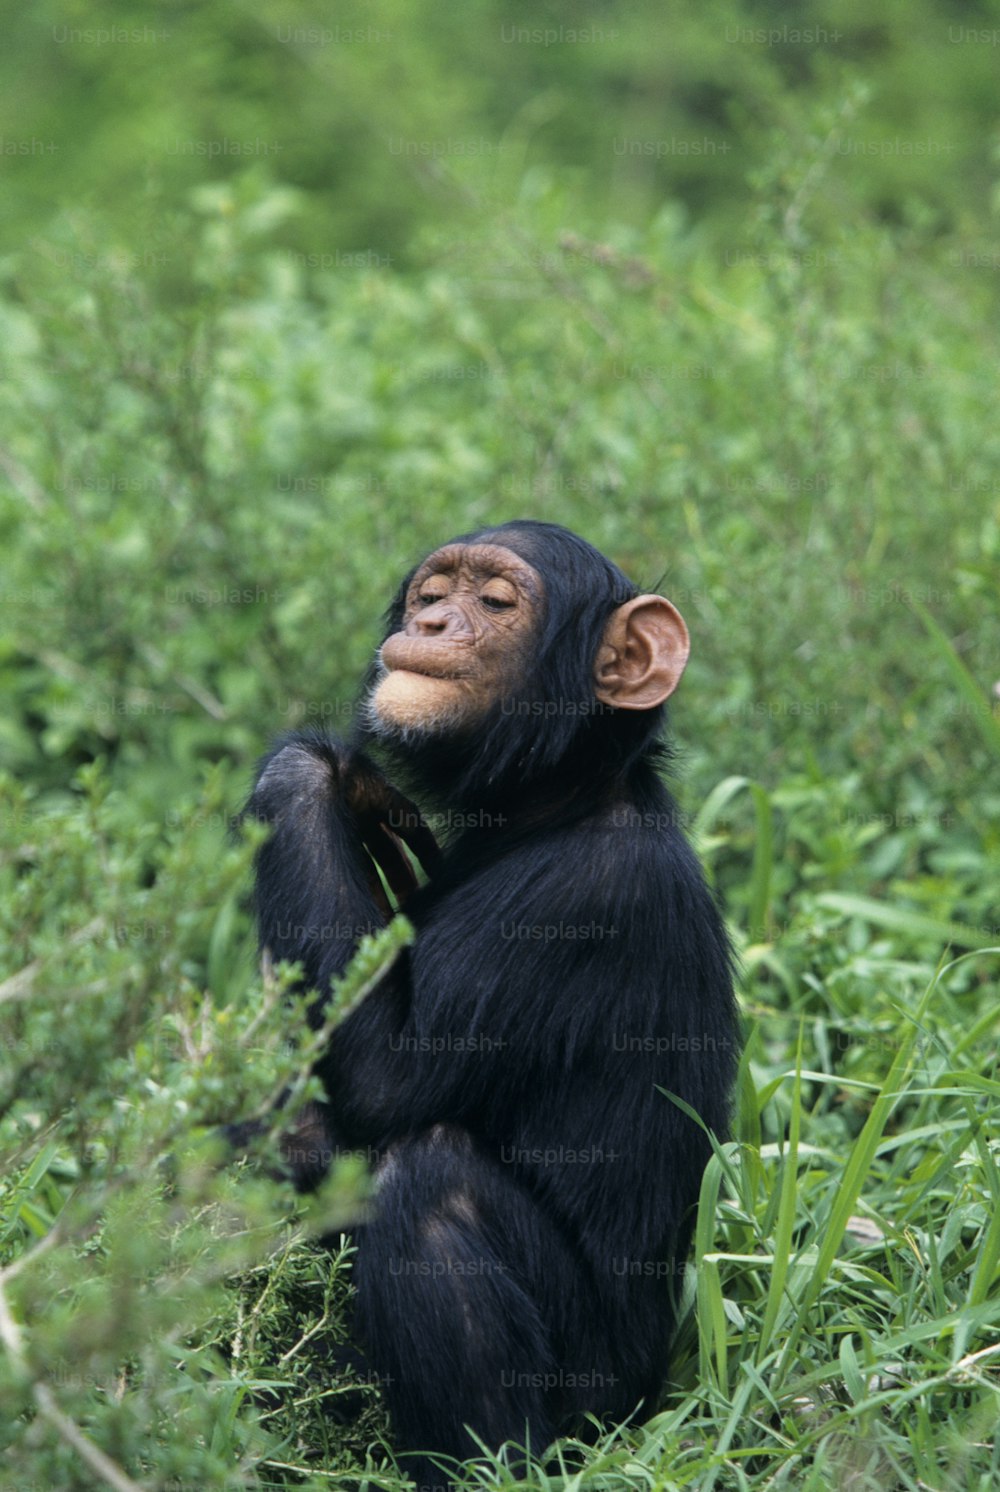 Ein Schimpanse, der auf einem Feld mit hohem Gras sitzt